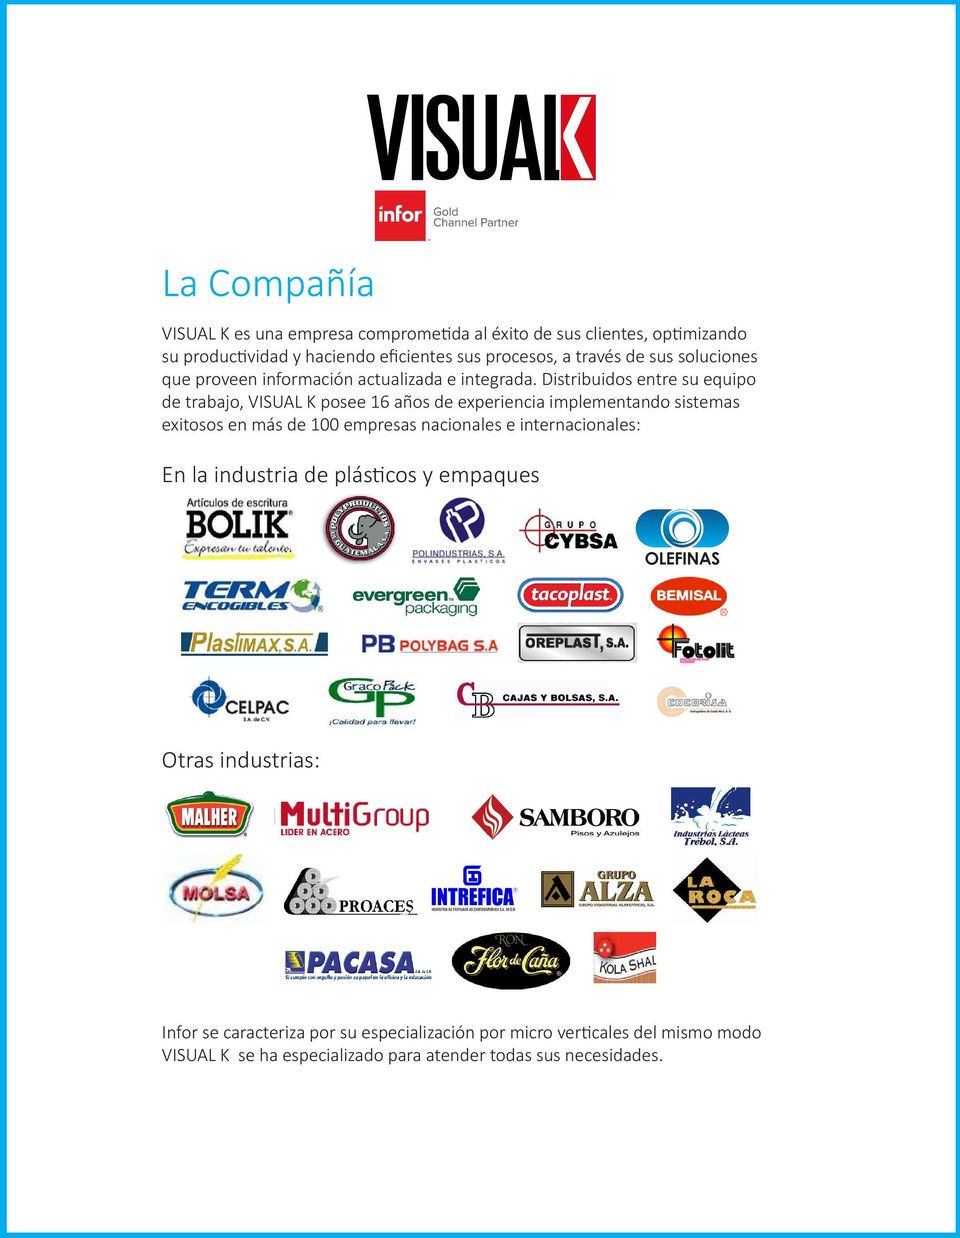 Distribuidos entre su equipo de trabajo, VISUAL K posee 16 años de experiencia implementando sistemas exitosos en más de 100 empresas nacionales